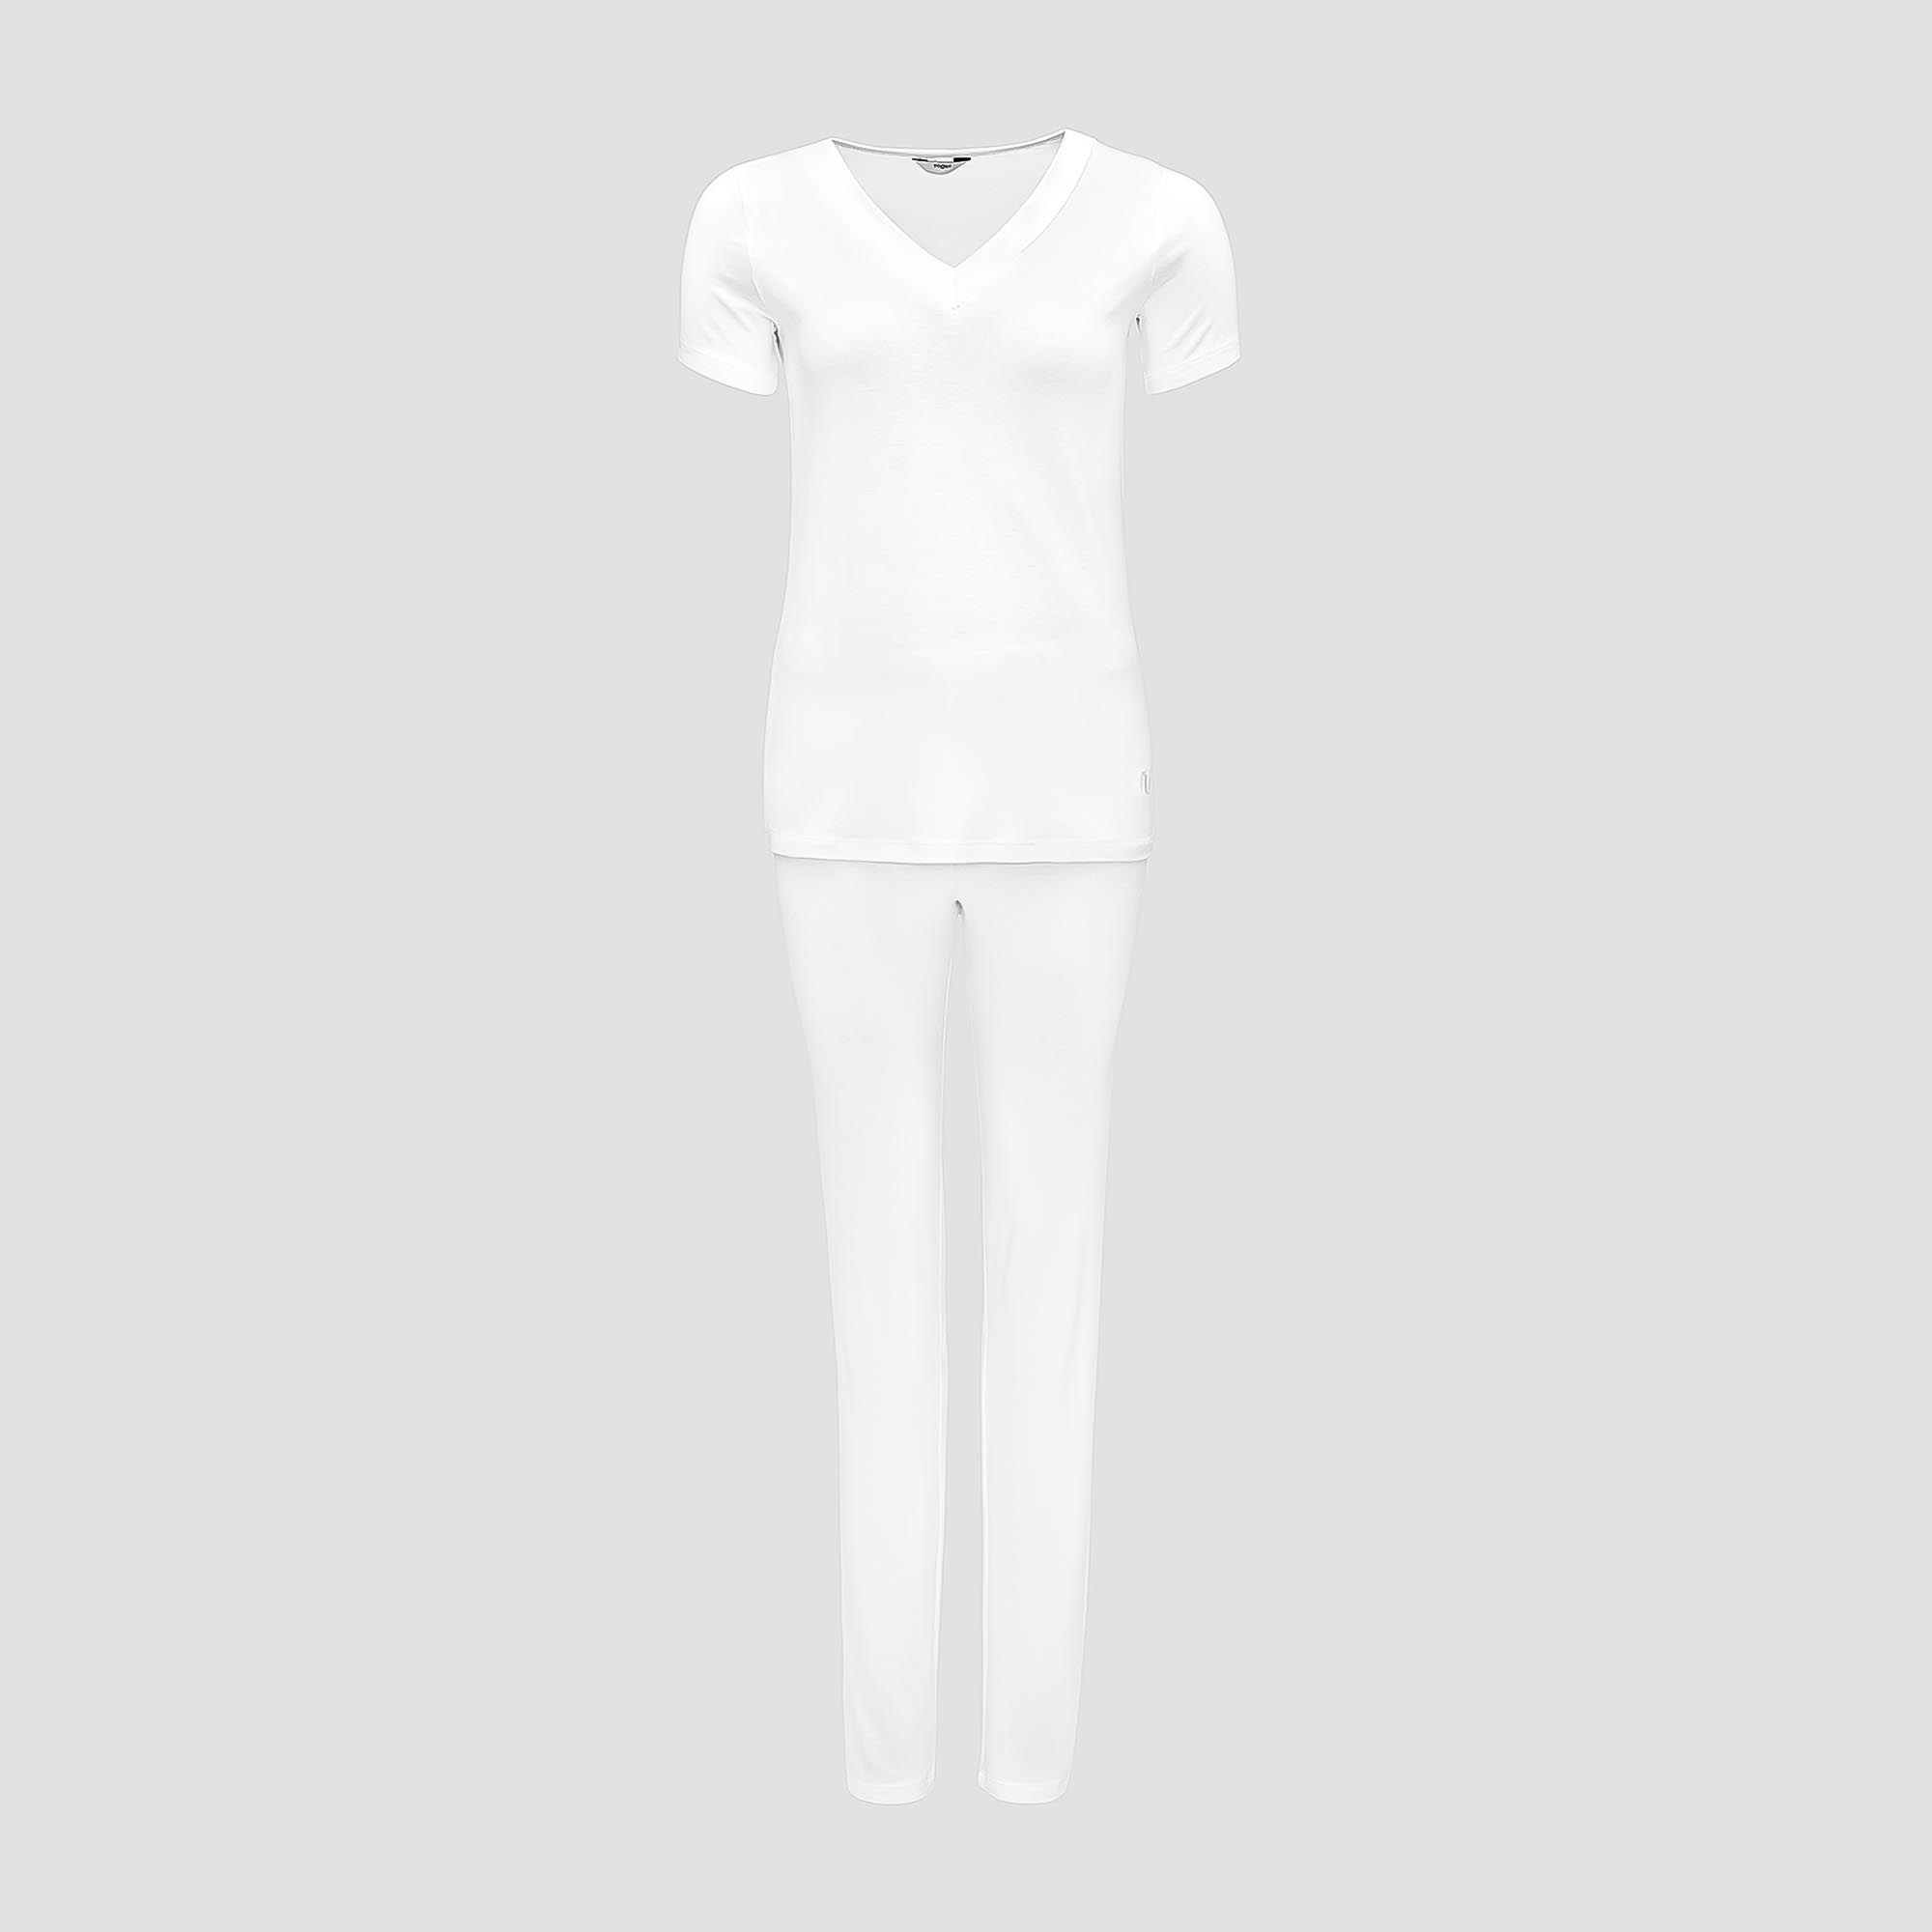 Пижама Togas Ингелла белая женская XXL(52) 2 предмета